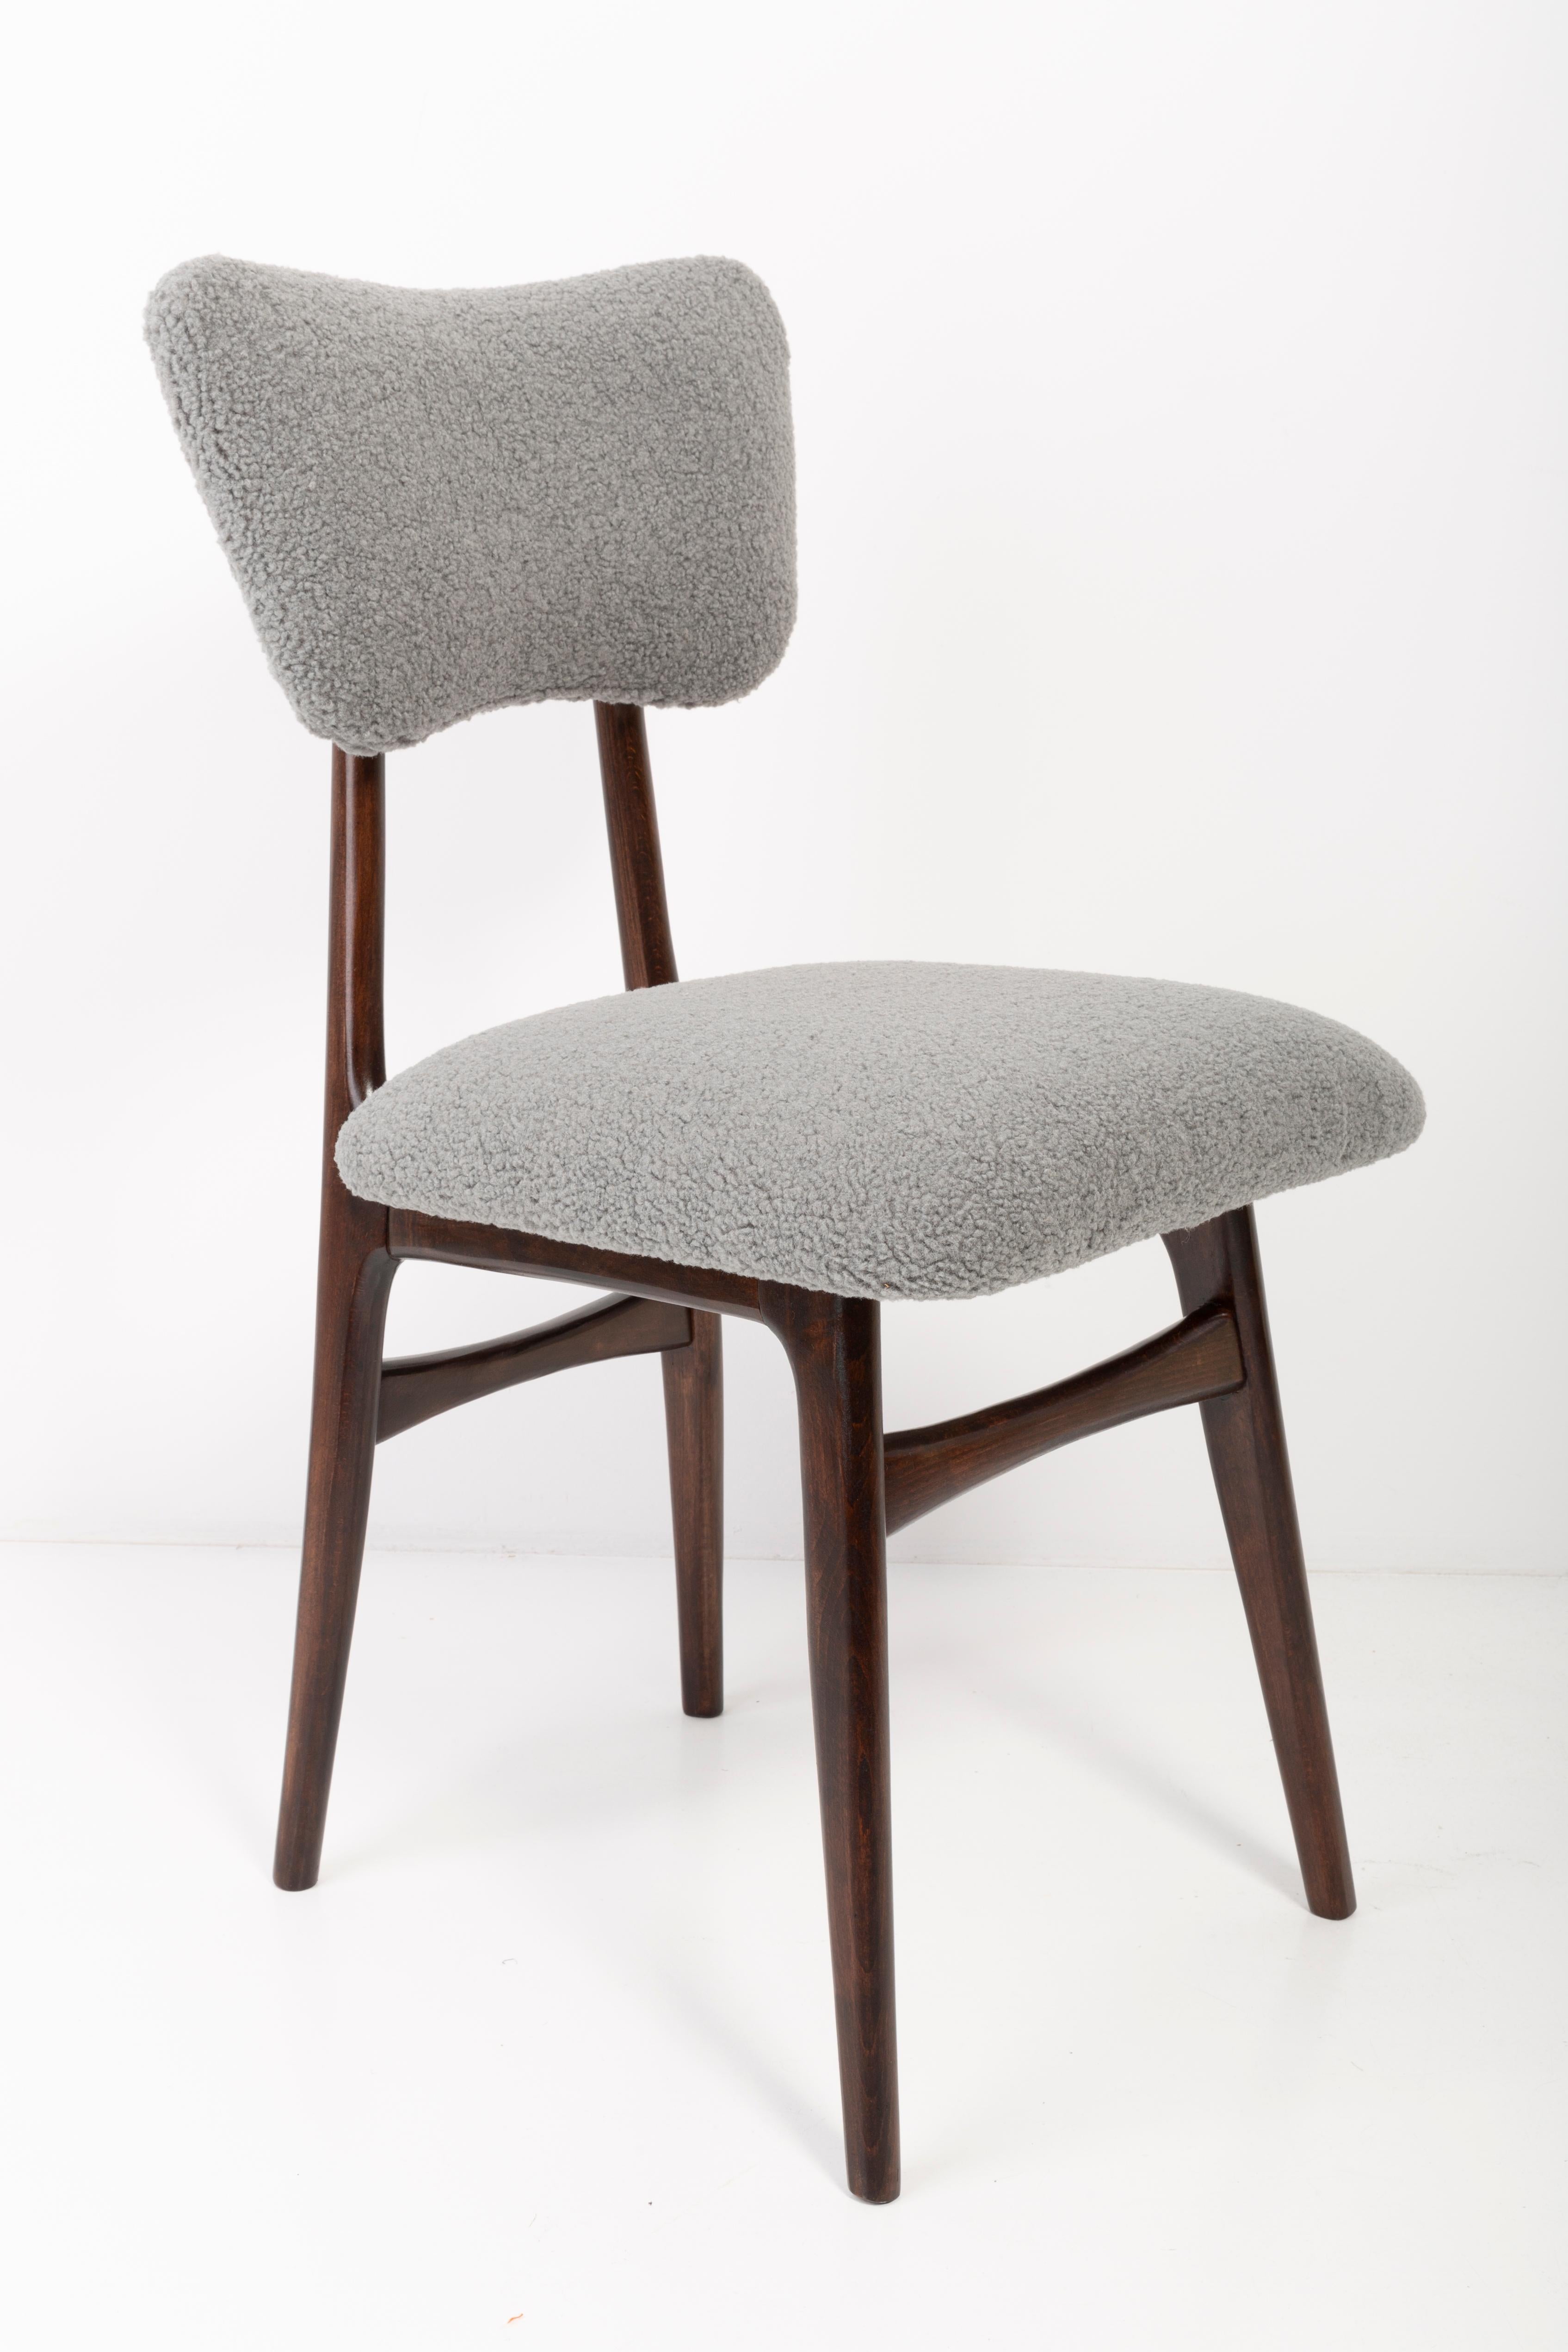 Chaises conçues par le professeur Rajmund Halas. Fabriqué en bois de hêtre. Les chaises ont fait l'objet d'une rénovation complète de leur revêtement et les boiseries ont été rafraîchies. L'assise et le dossier sont habillés d'un tissu bouclé gris,